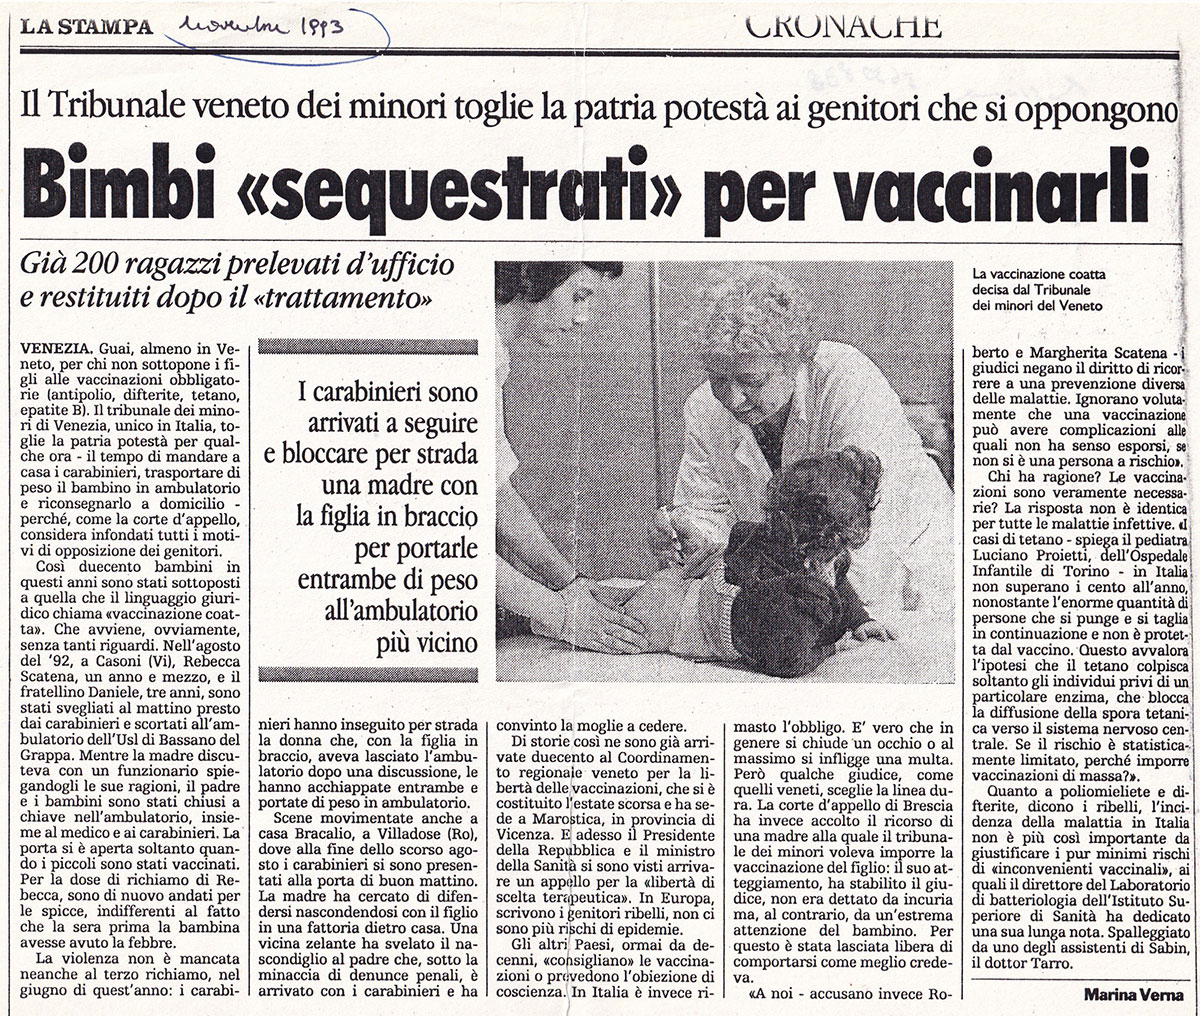 Niños "apresados" para ser vacunados. La Stampa, noviembre de 1993